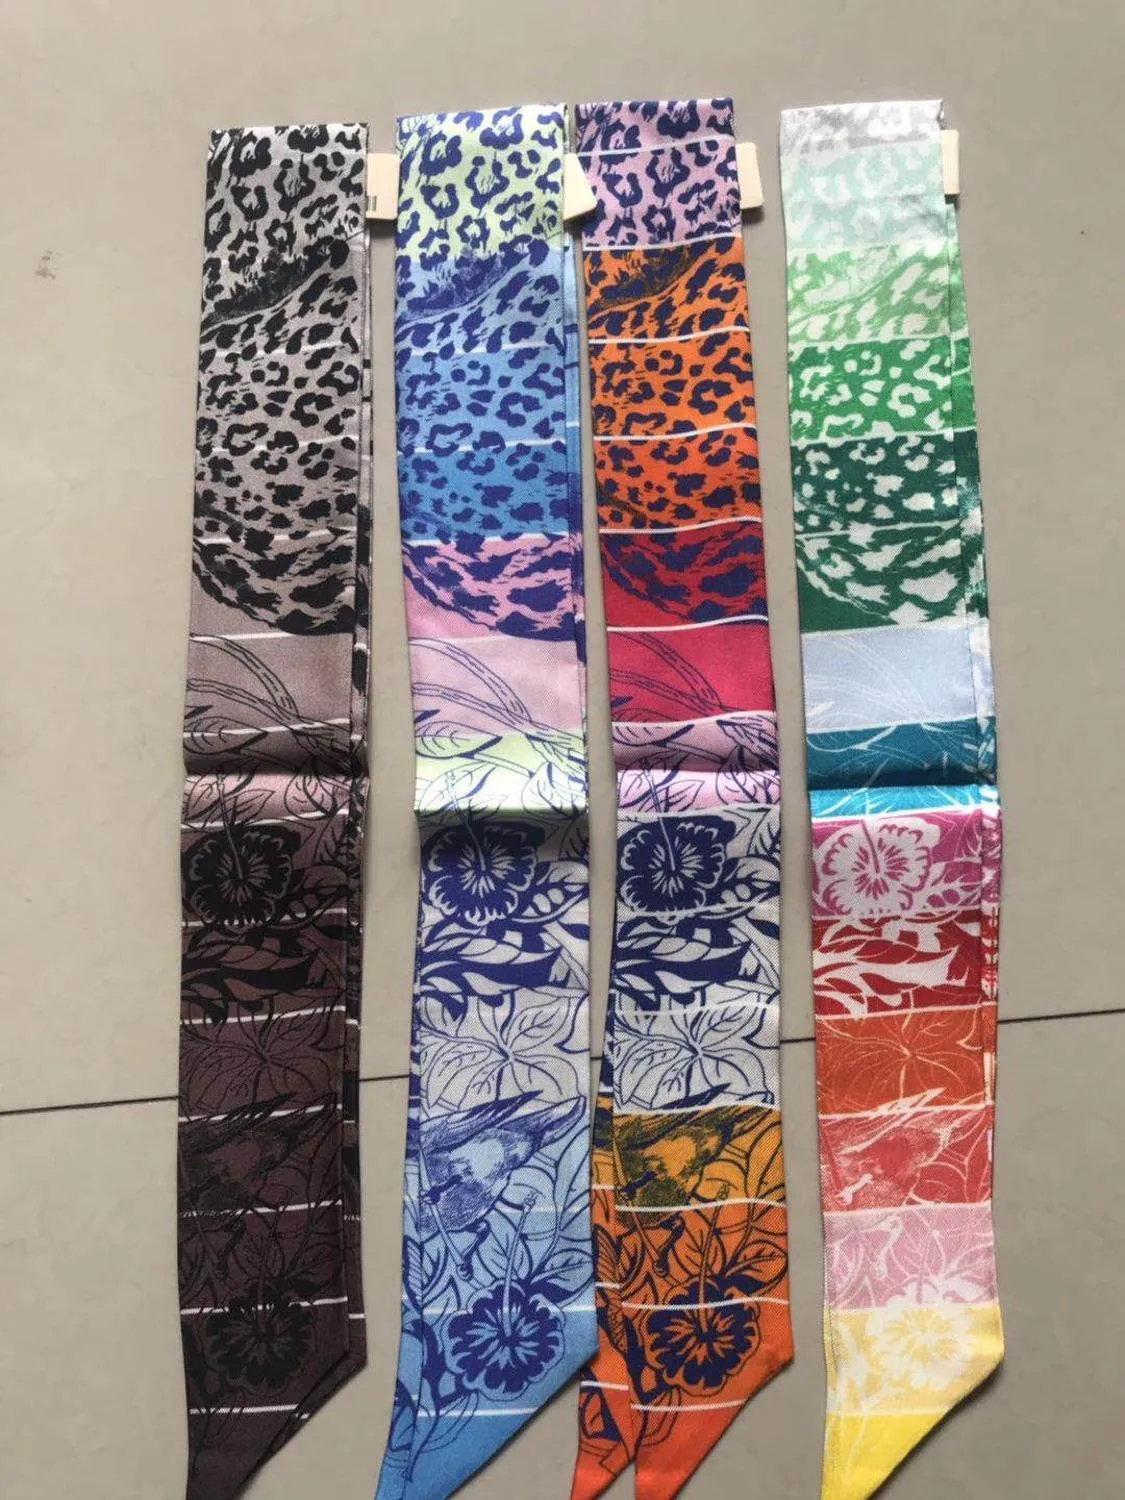 2020 arrival fashion head classic 100% silk scarf 105*6 cm long shawl twill belt strap bag band for women girl lady